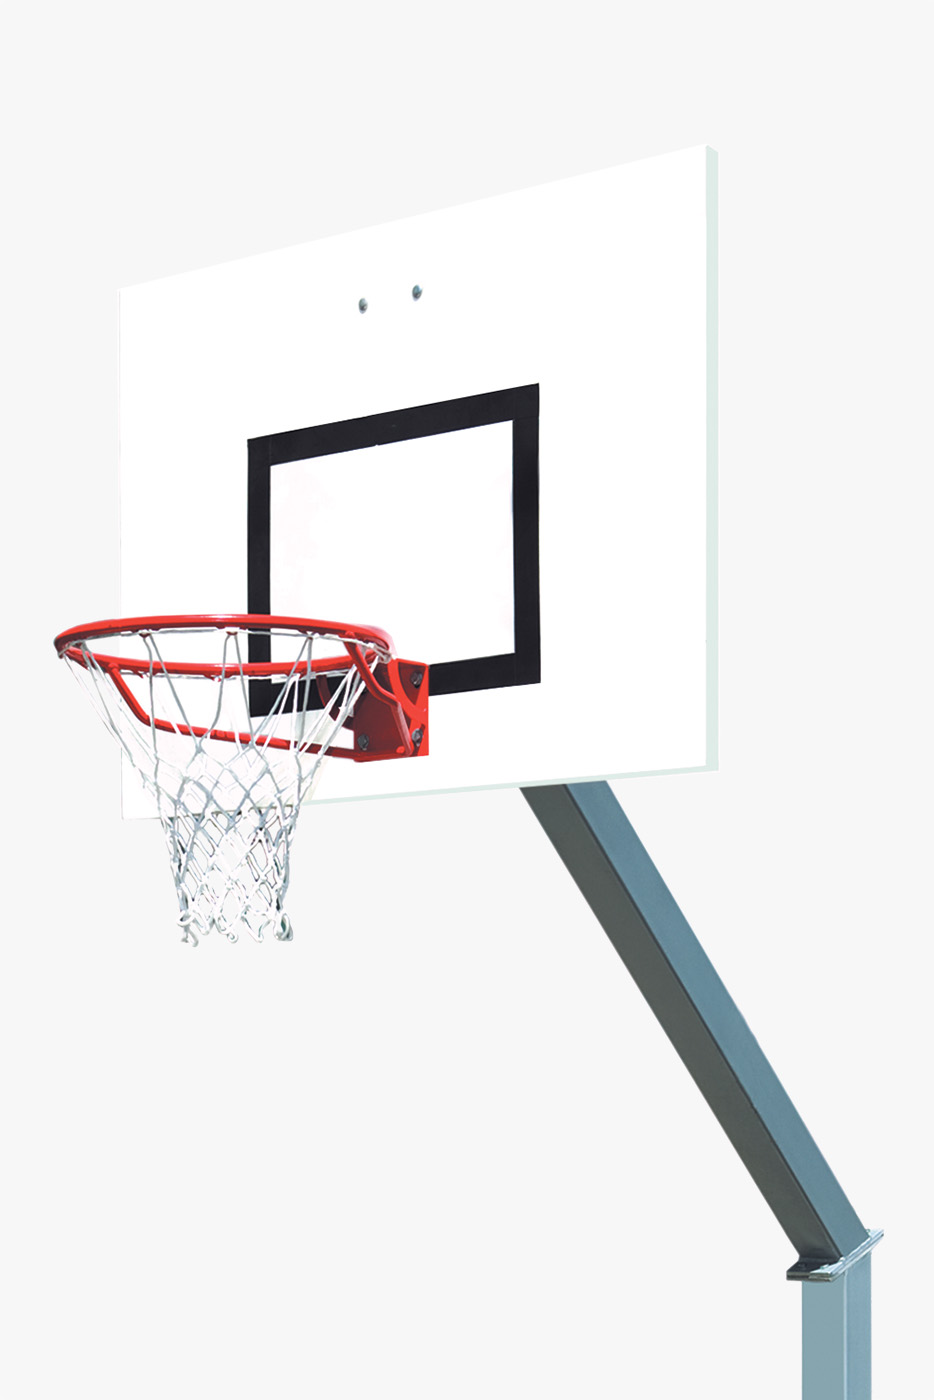 Panier de basket hauteur cercle 3,05 m - déport 1,20 m